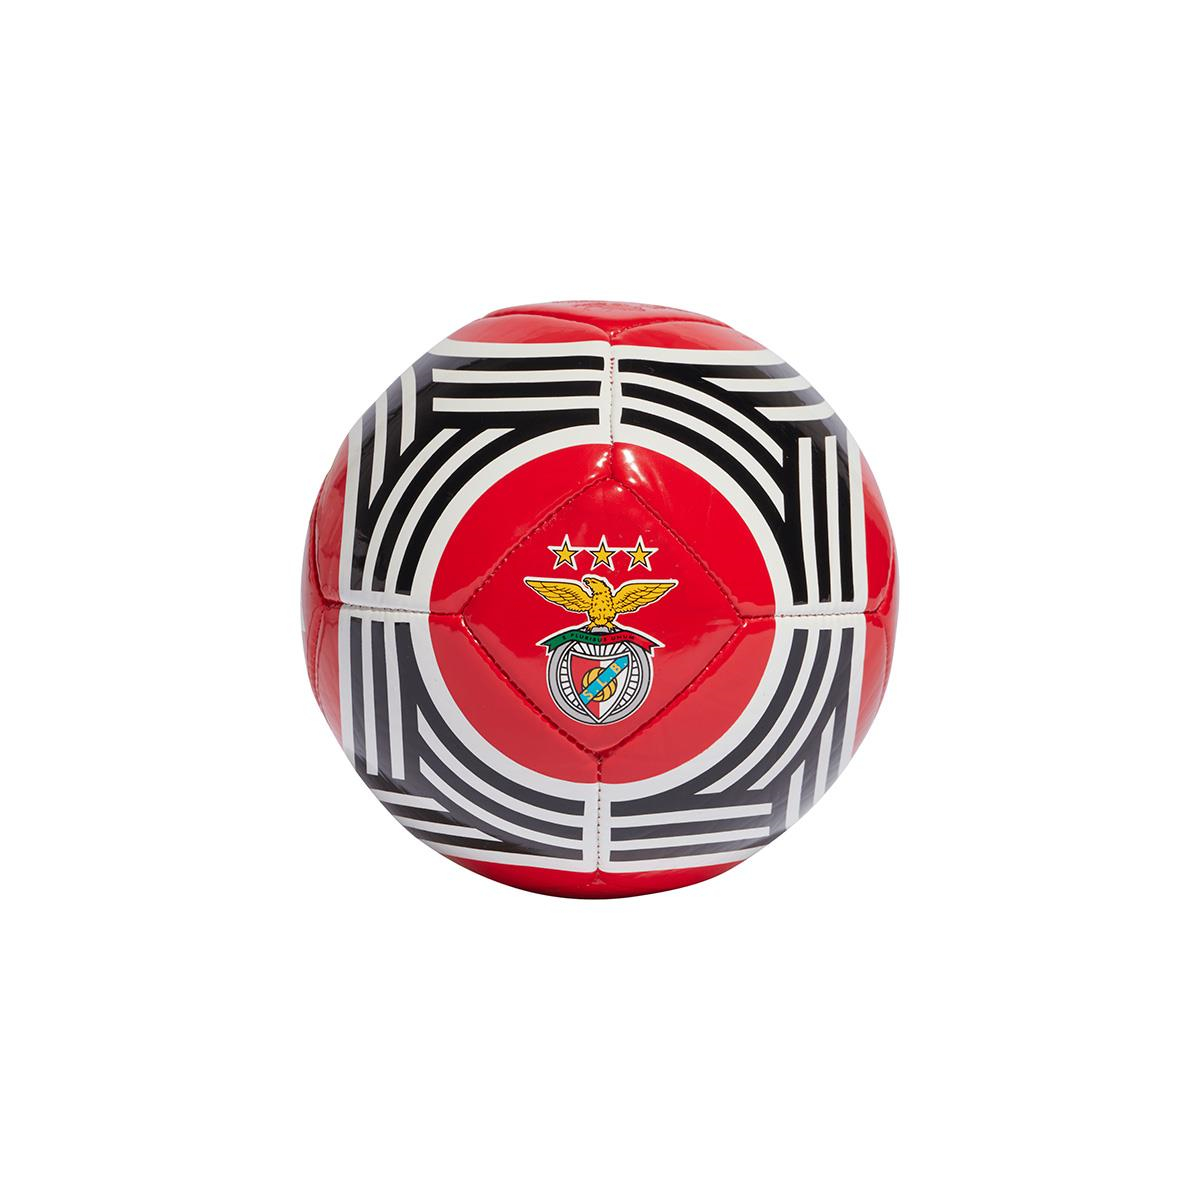 Mini ballon Benfica 23/24